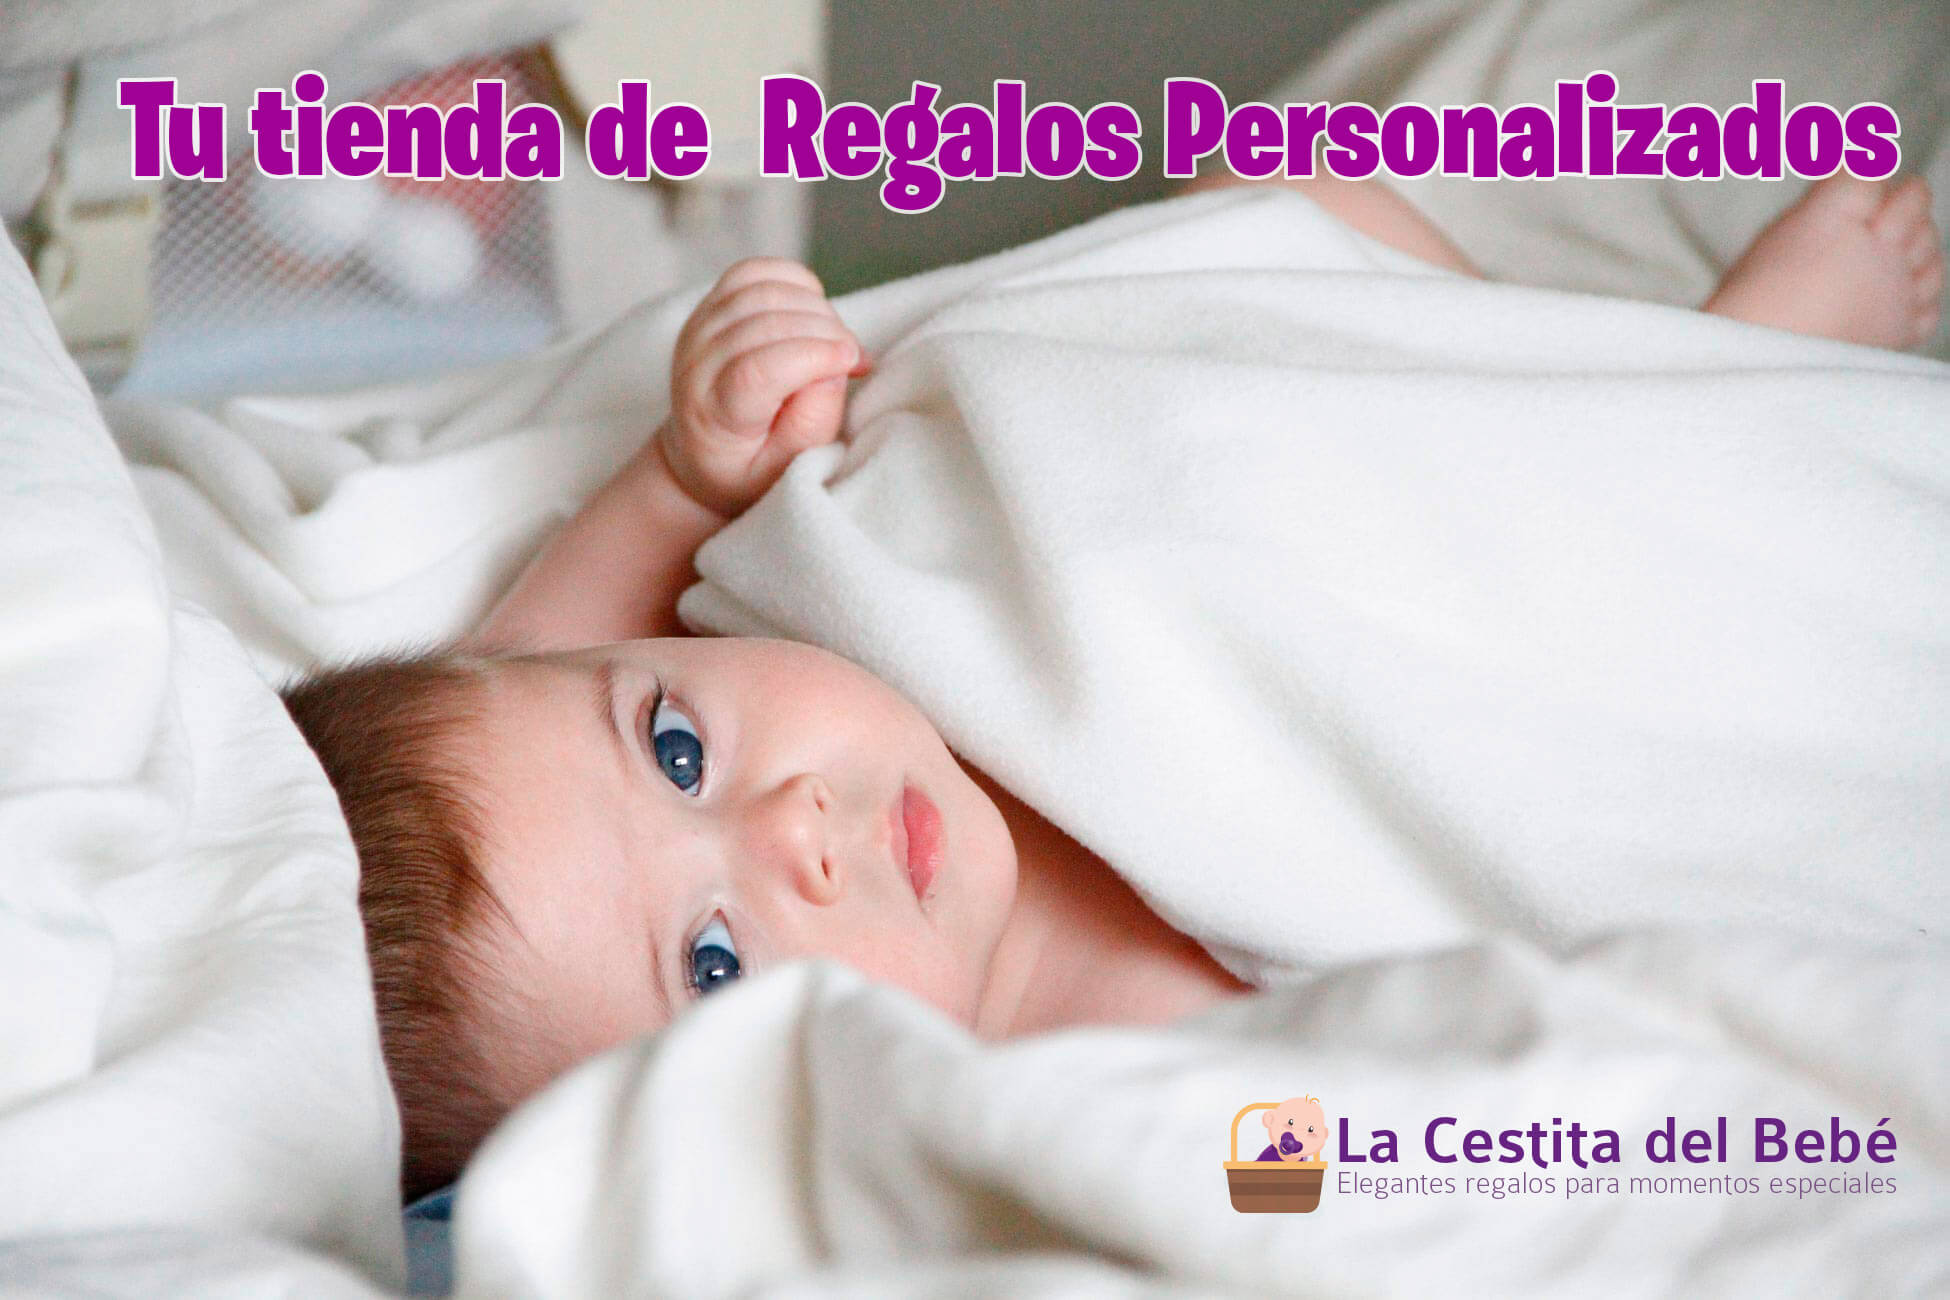 tise AQ Regalos Personaliz avg

  

{
| ) a La Cestita del Bebé
% [EEE Elegantes regalos para momentos especiales
1 -